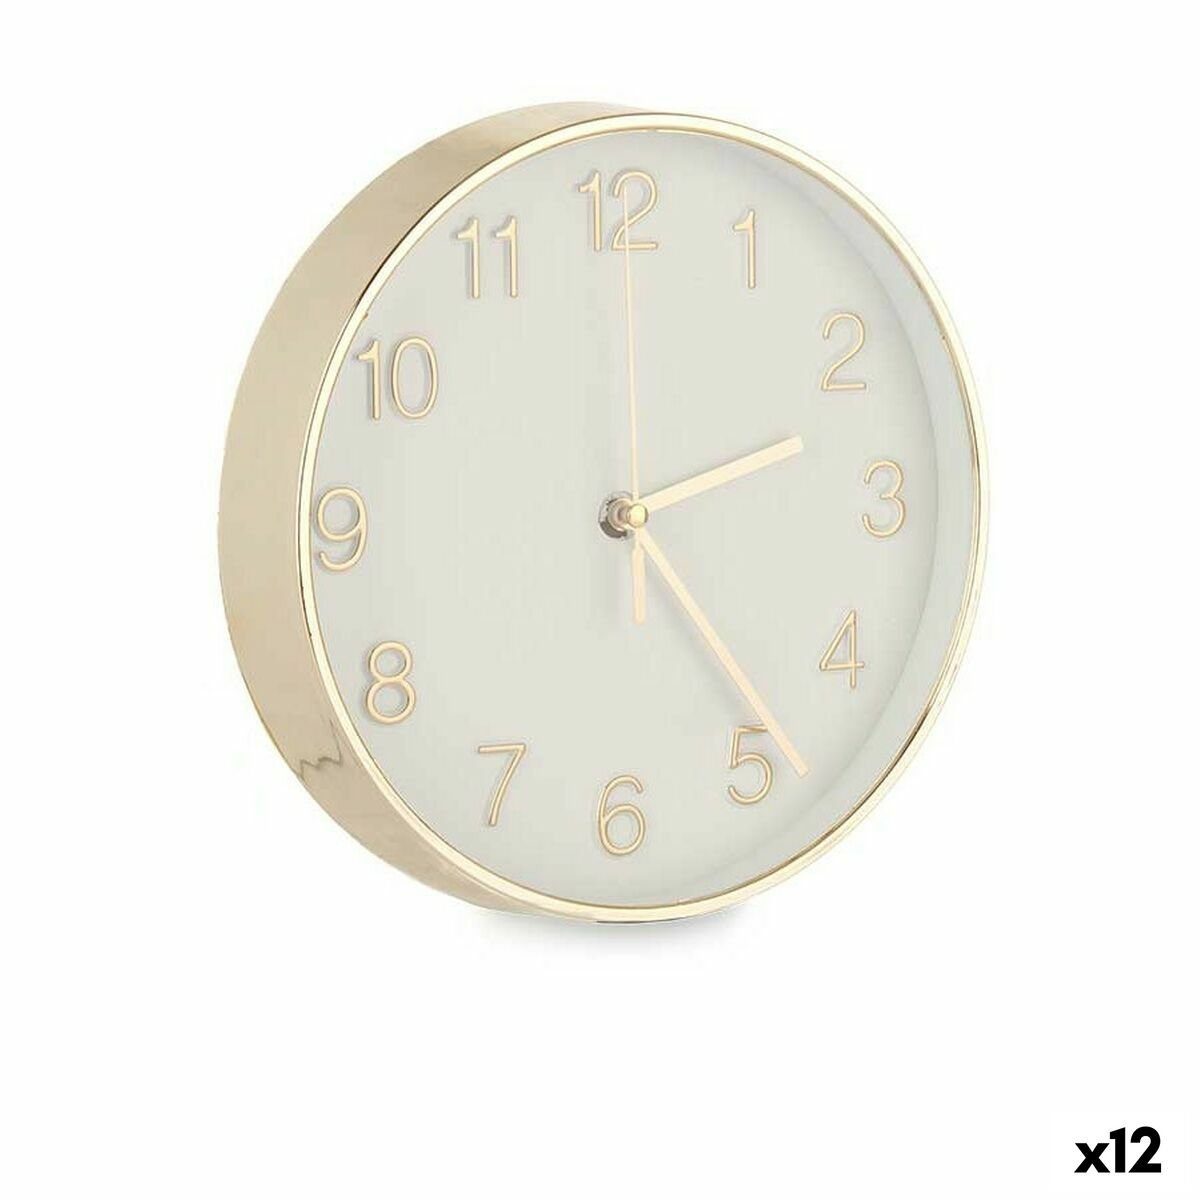 Gift Decor Uhr Wanduhr rund 20 cm Glas 20 3,5 Gold x Kunststoff Wohnzimmer x 12 Stück